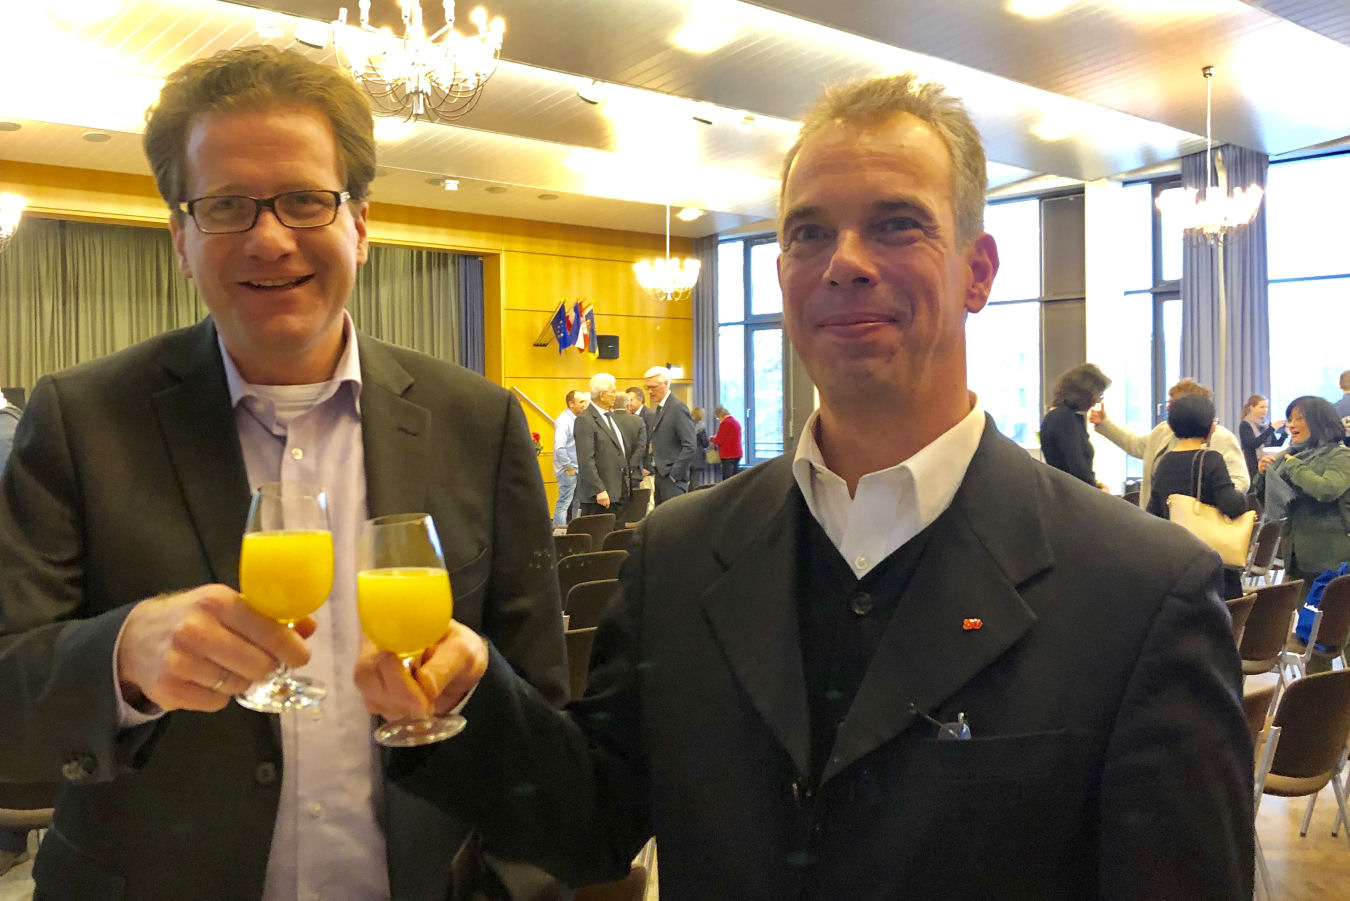 Foto: Martin Habersaat und Glindes SPD-Vorsitzender Okke Wismann stoßen auf das neue Jahr an.